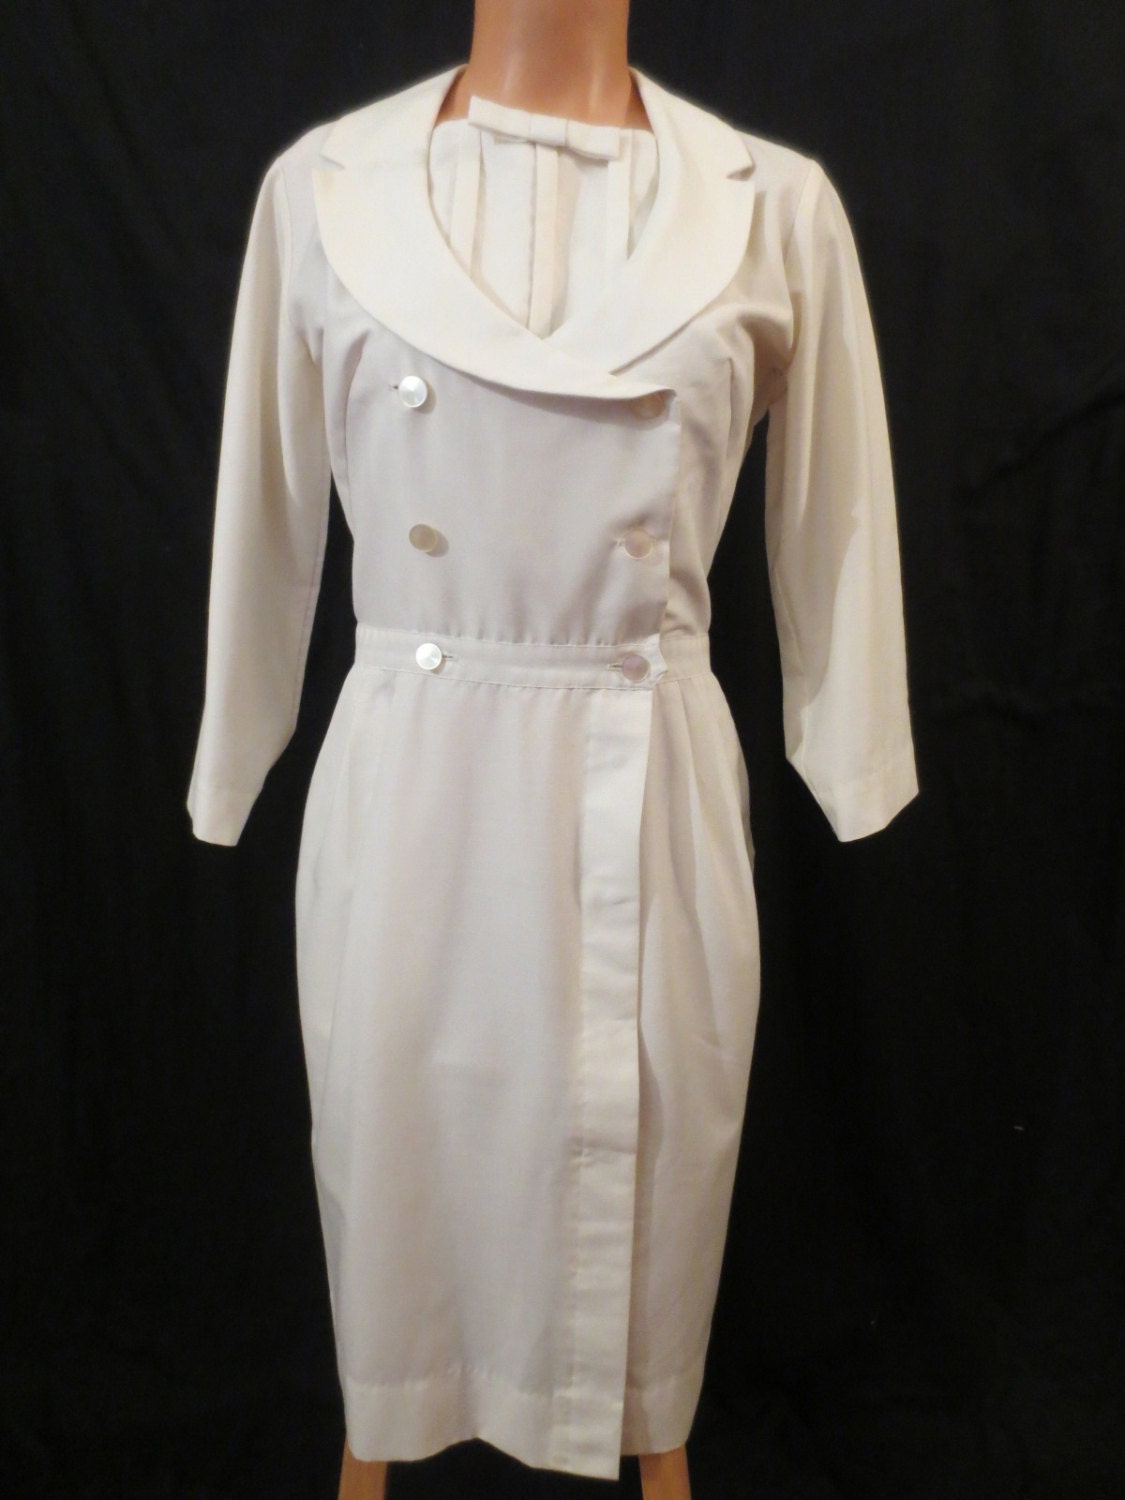 THIS WONT HURT vintage nurse uniform dress Barco hourglass sz